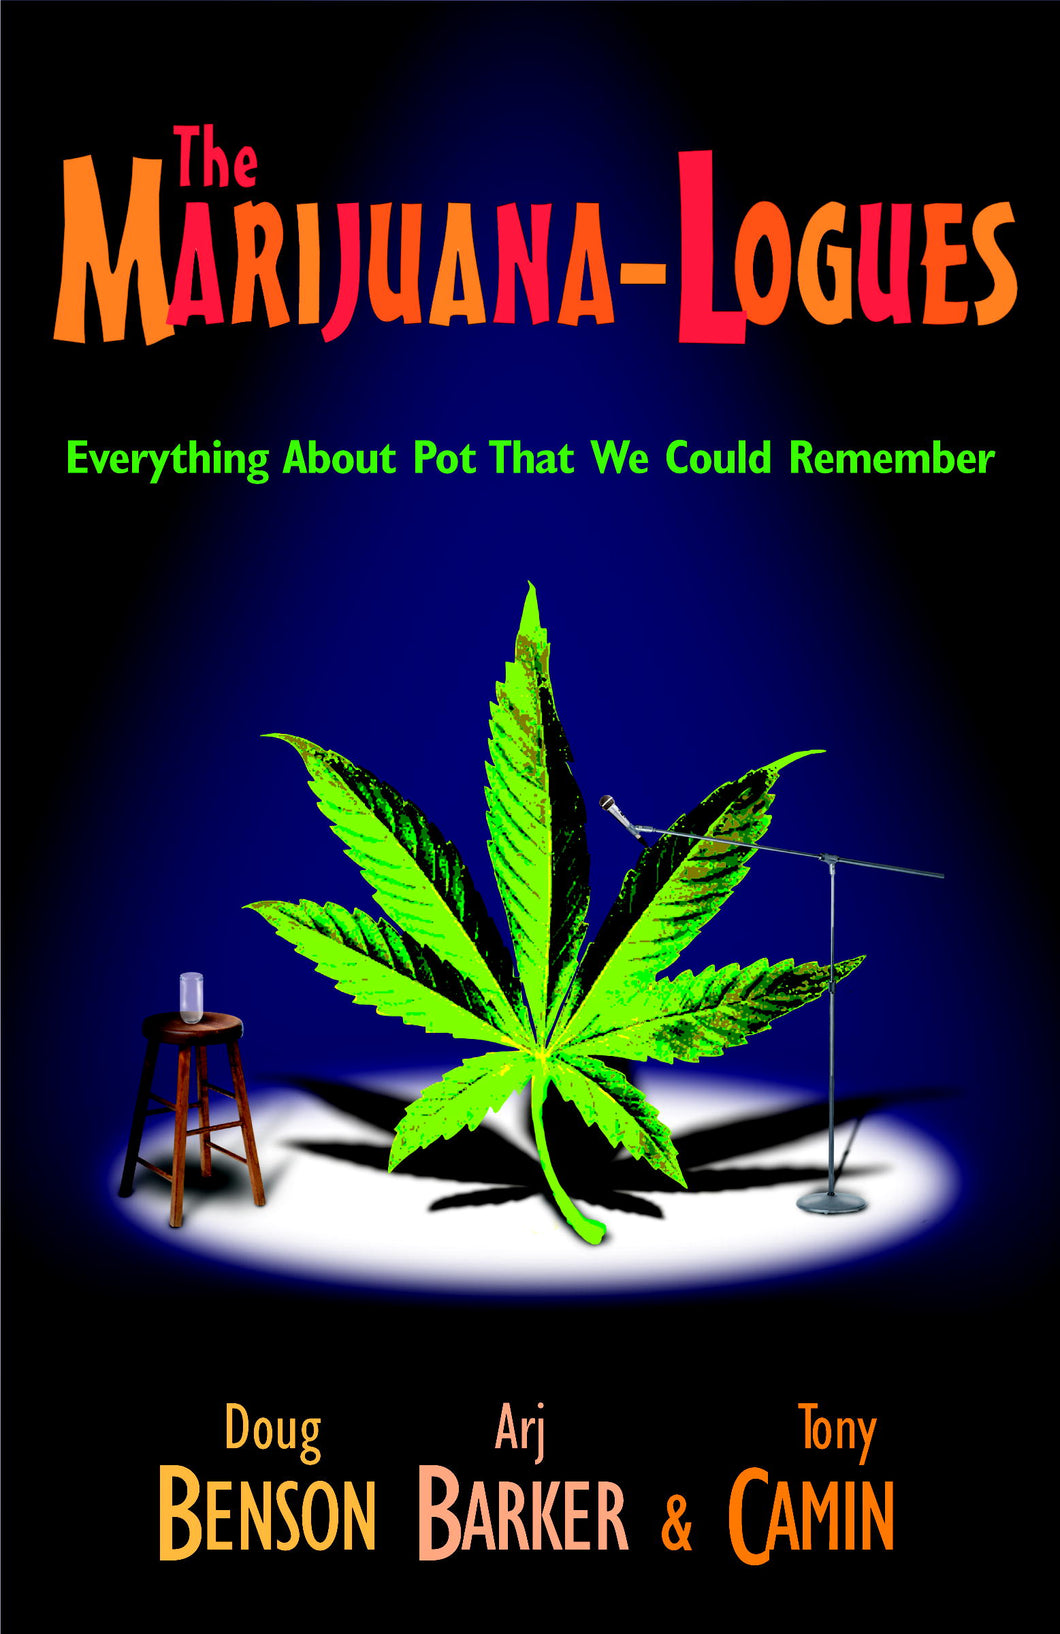 The Marijuana-logues